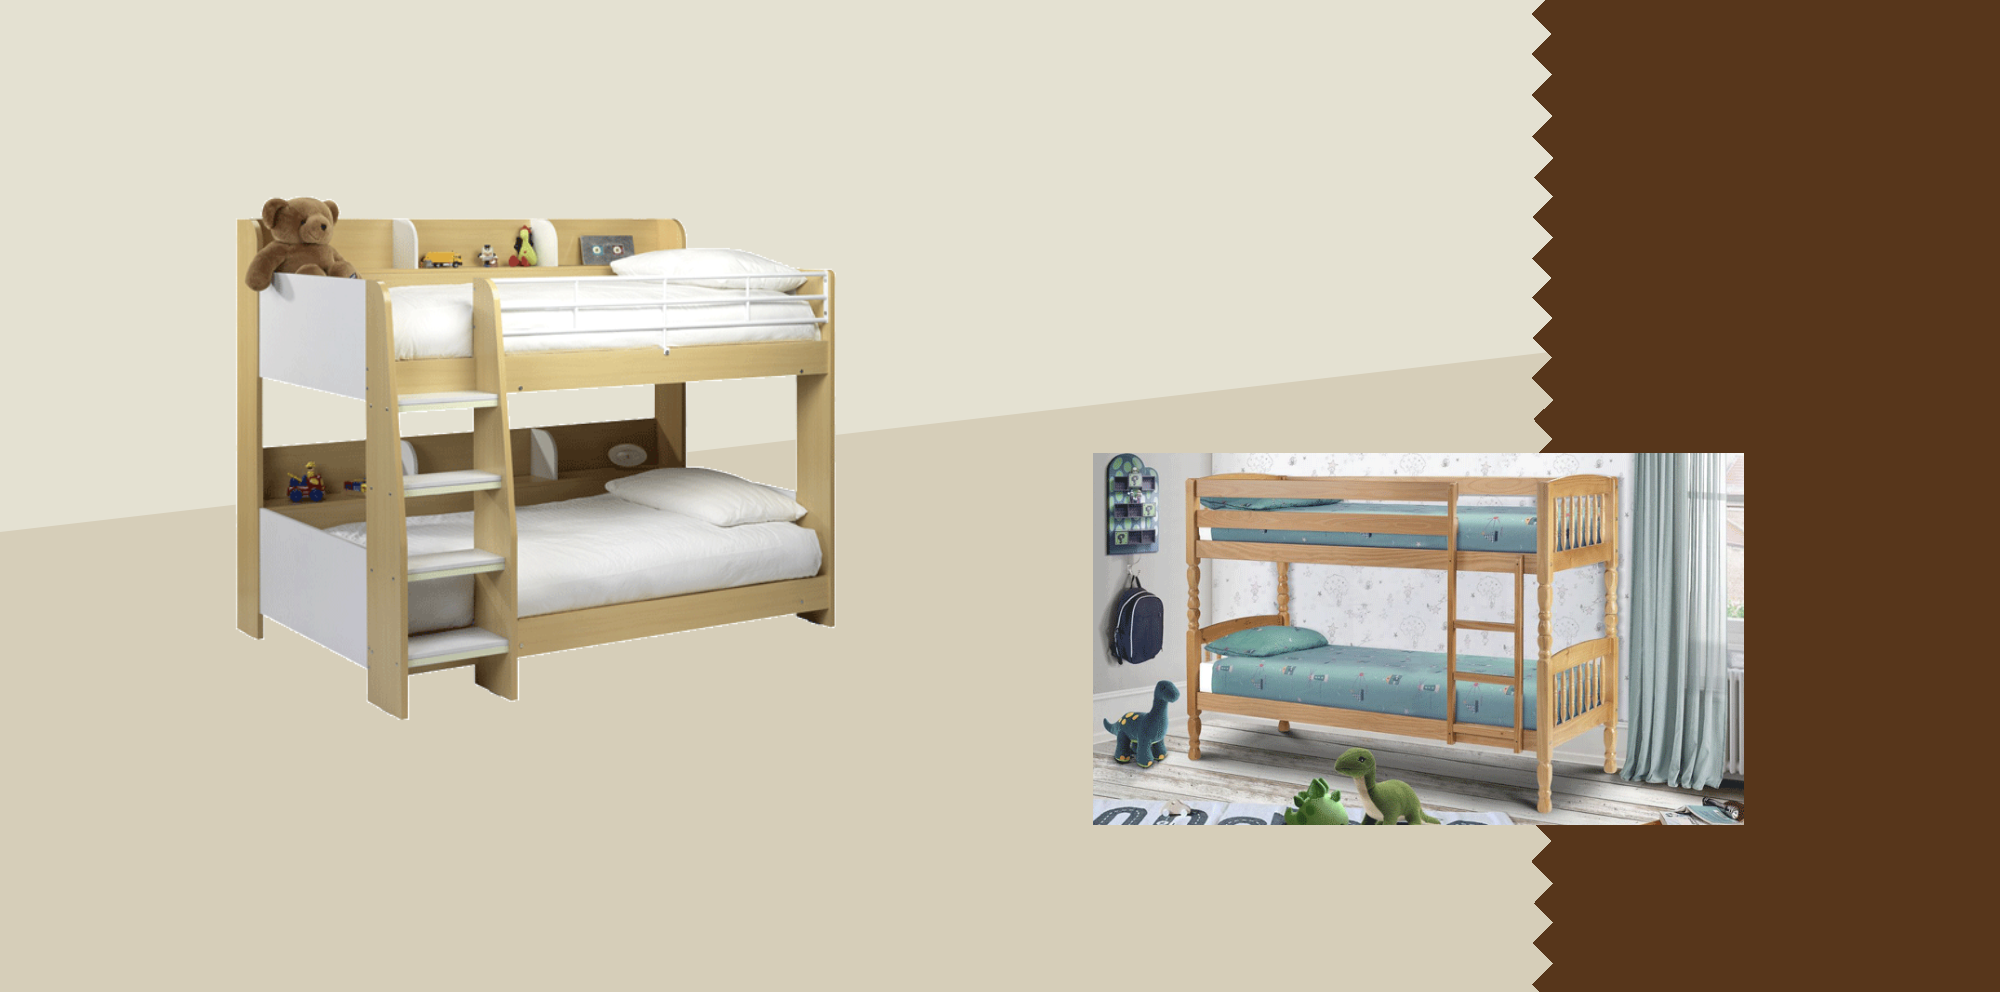 Bunk Beds At Turvey S Fine Furniture, Harveys Furniture Bunk Beds